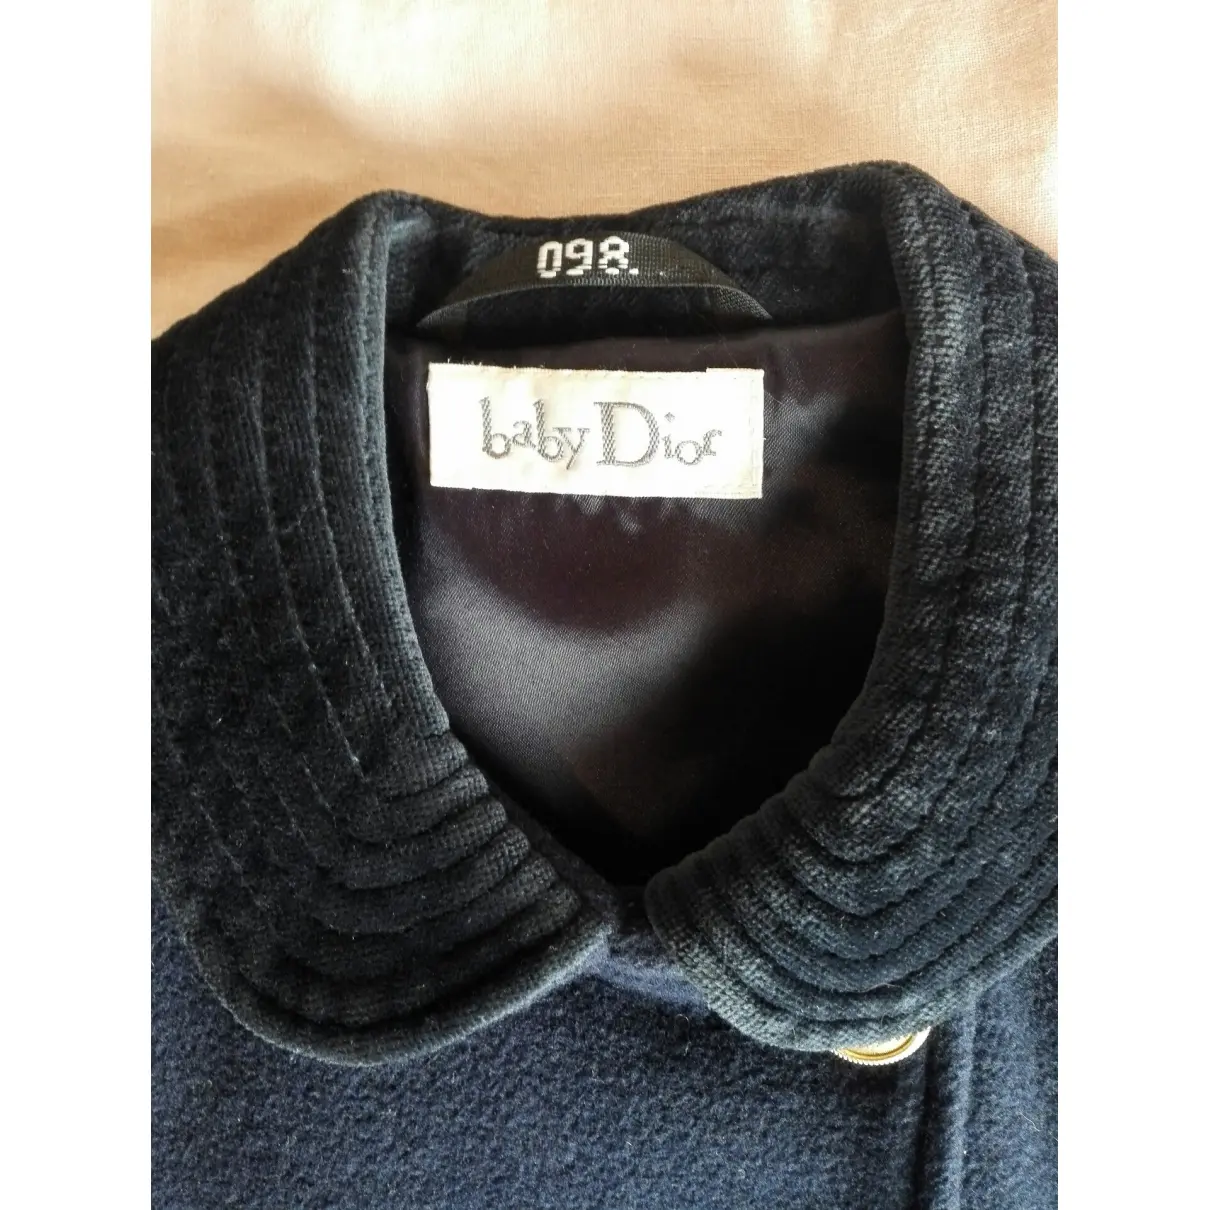 Buy Baby Dior Wool coat online - Vintage